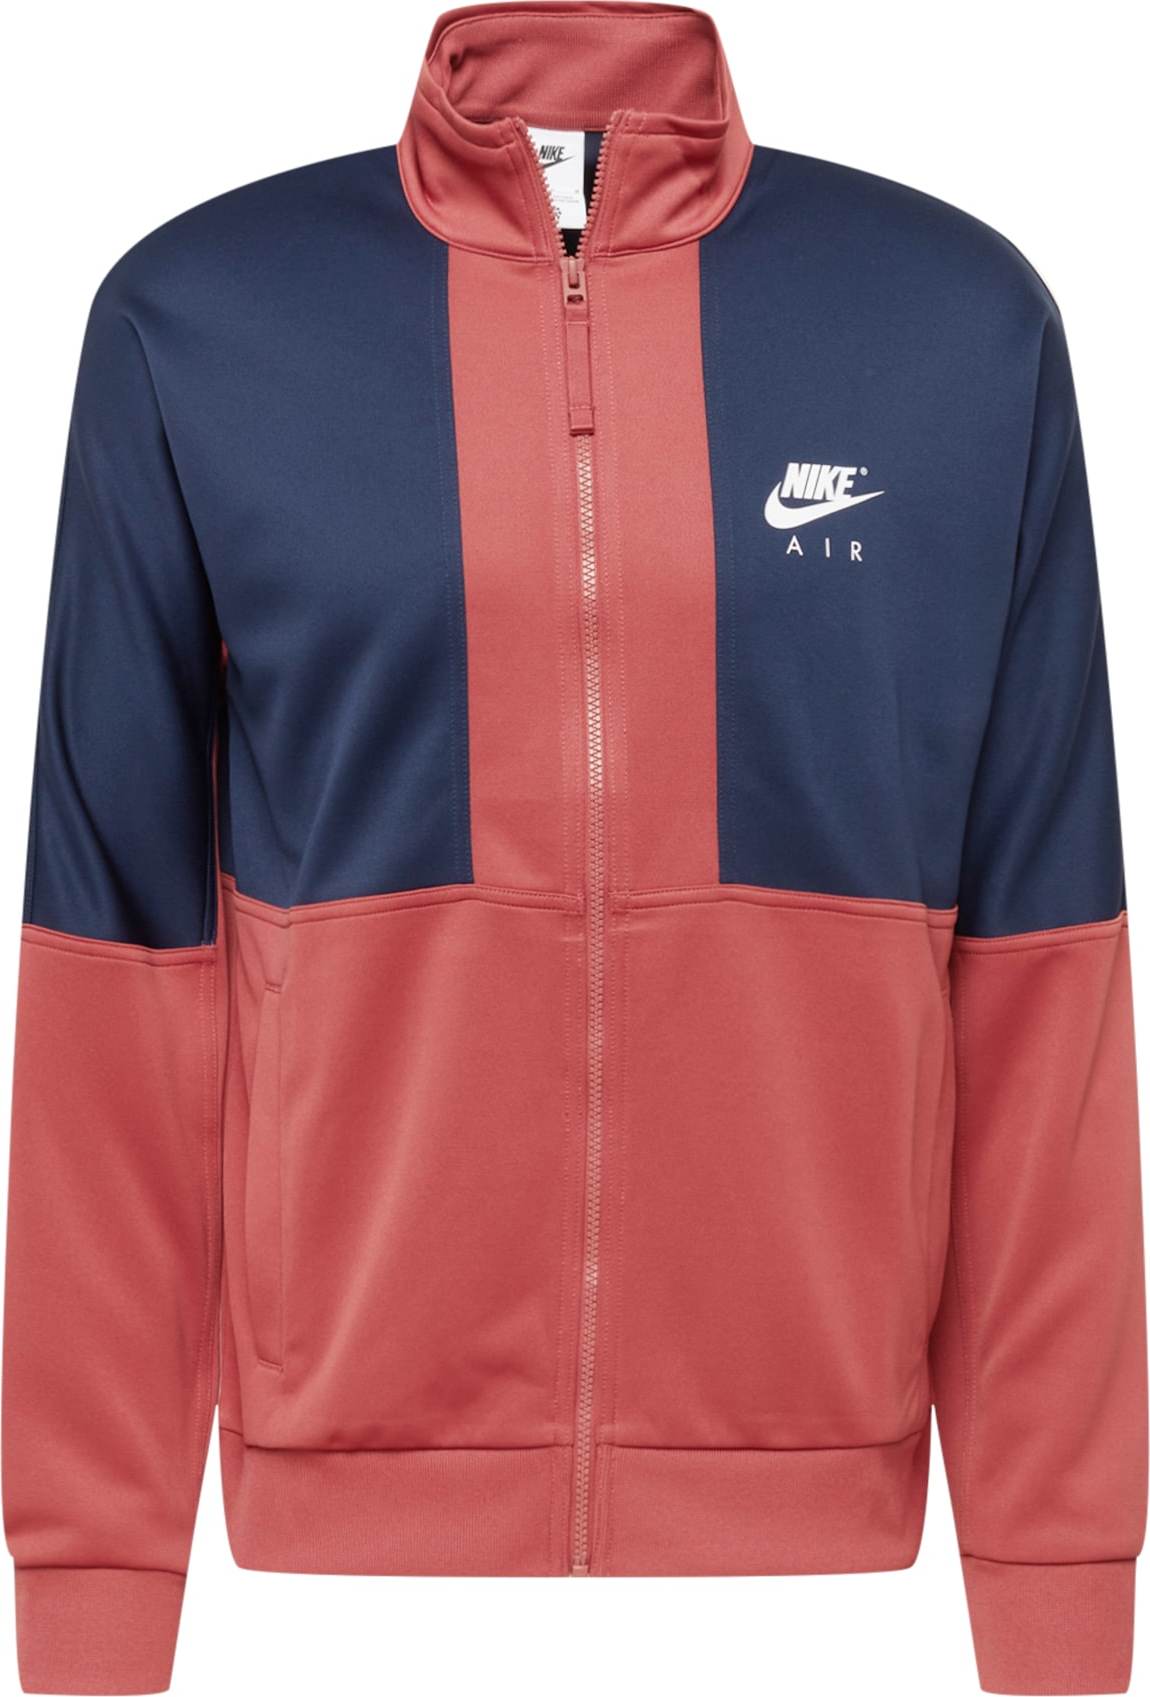 Nike Sportswear Mikina s kapucí humrová / námořnická modř